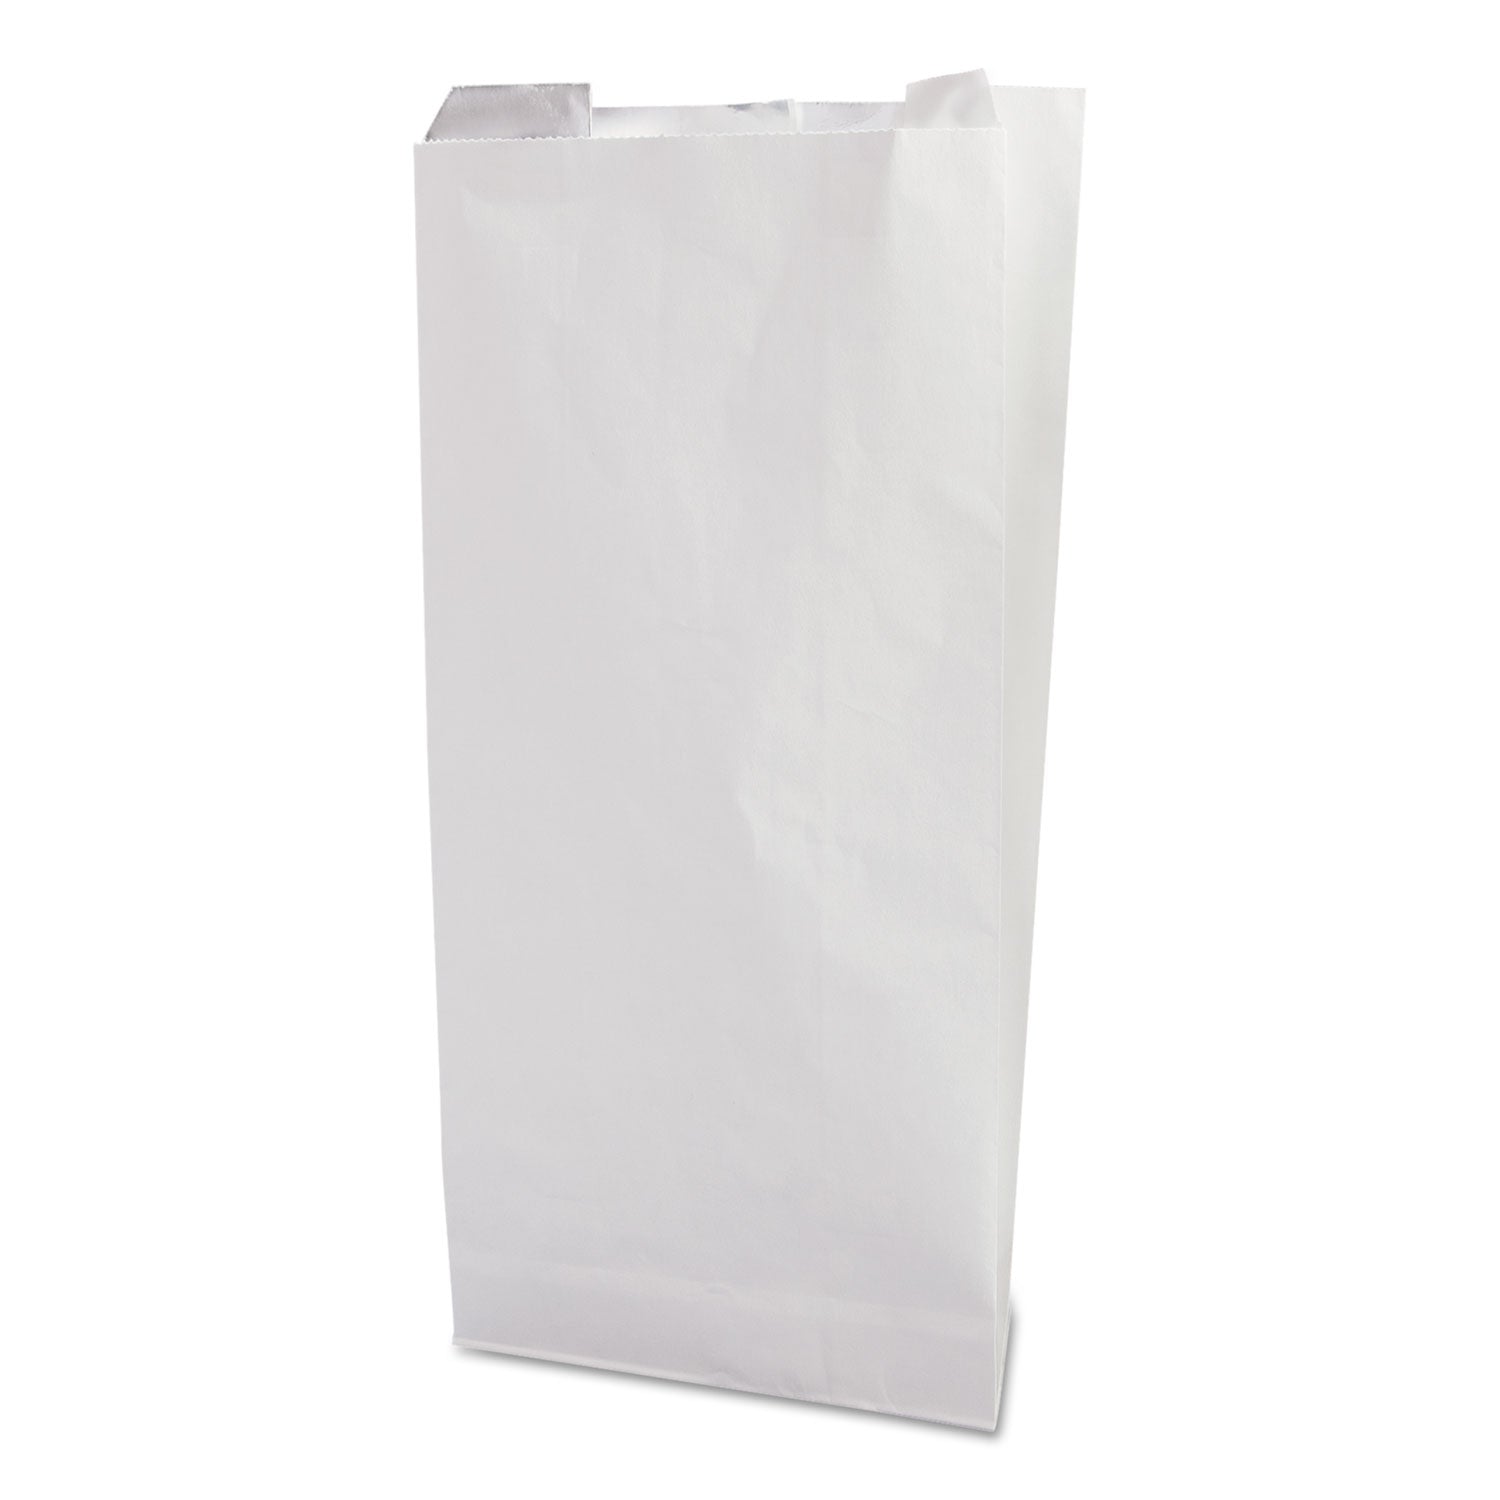 togo!-foil-insulator-deli-and-sandwich-bags-525-x-12-white-unprinted-500-carton_bgc300496 - 1